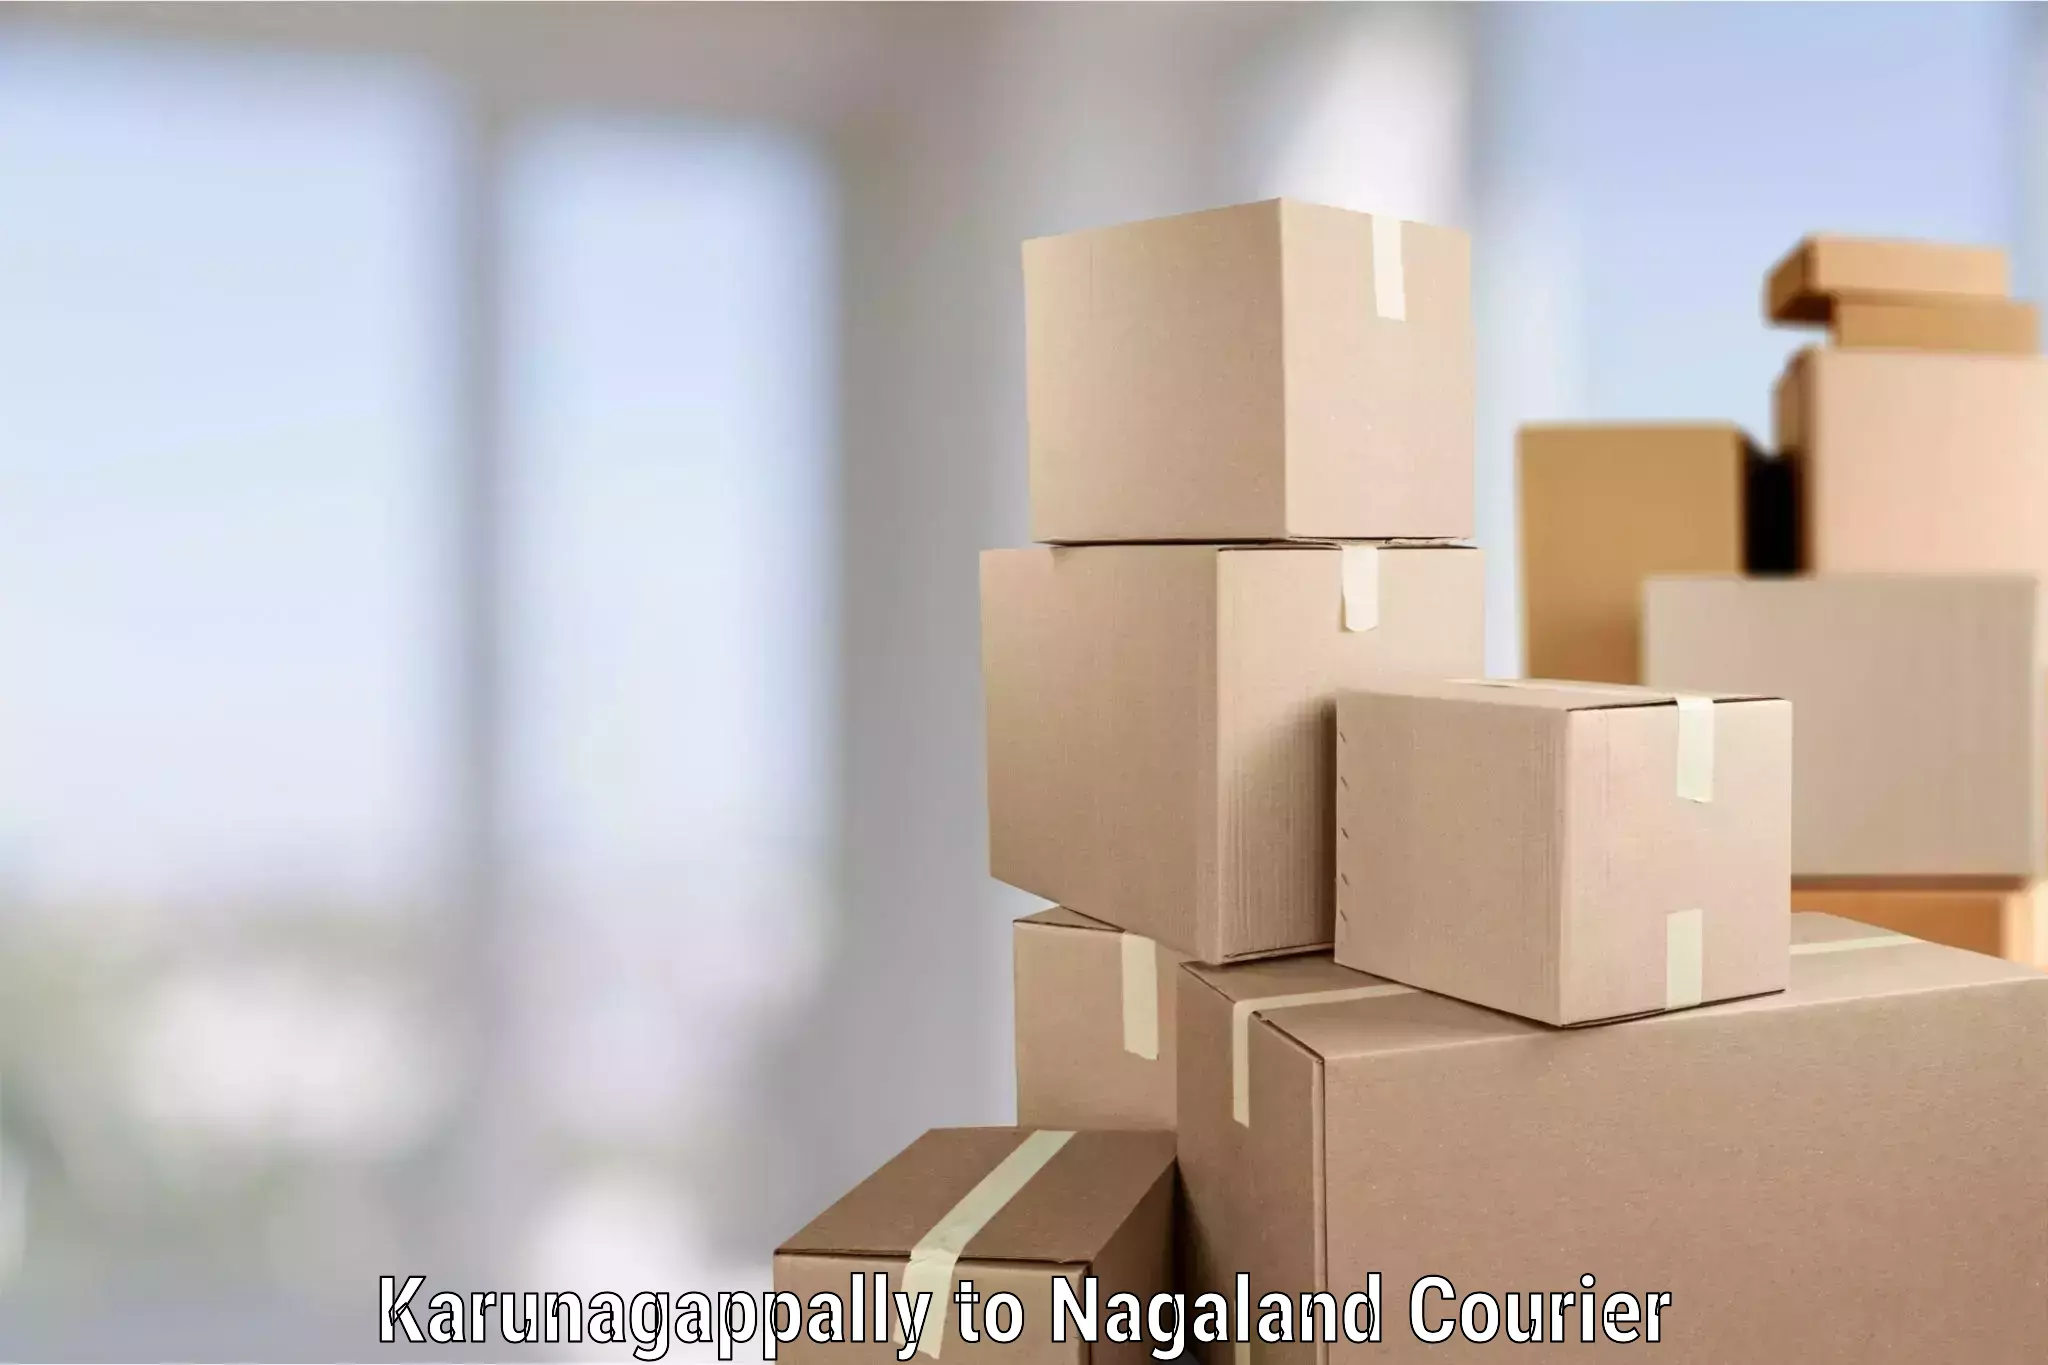 Professional moving company Karunagappally to NIT Nagaland